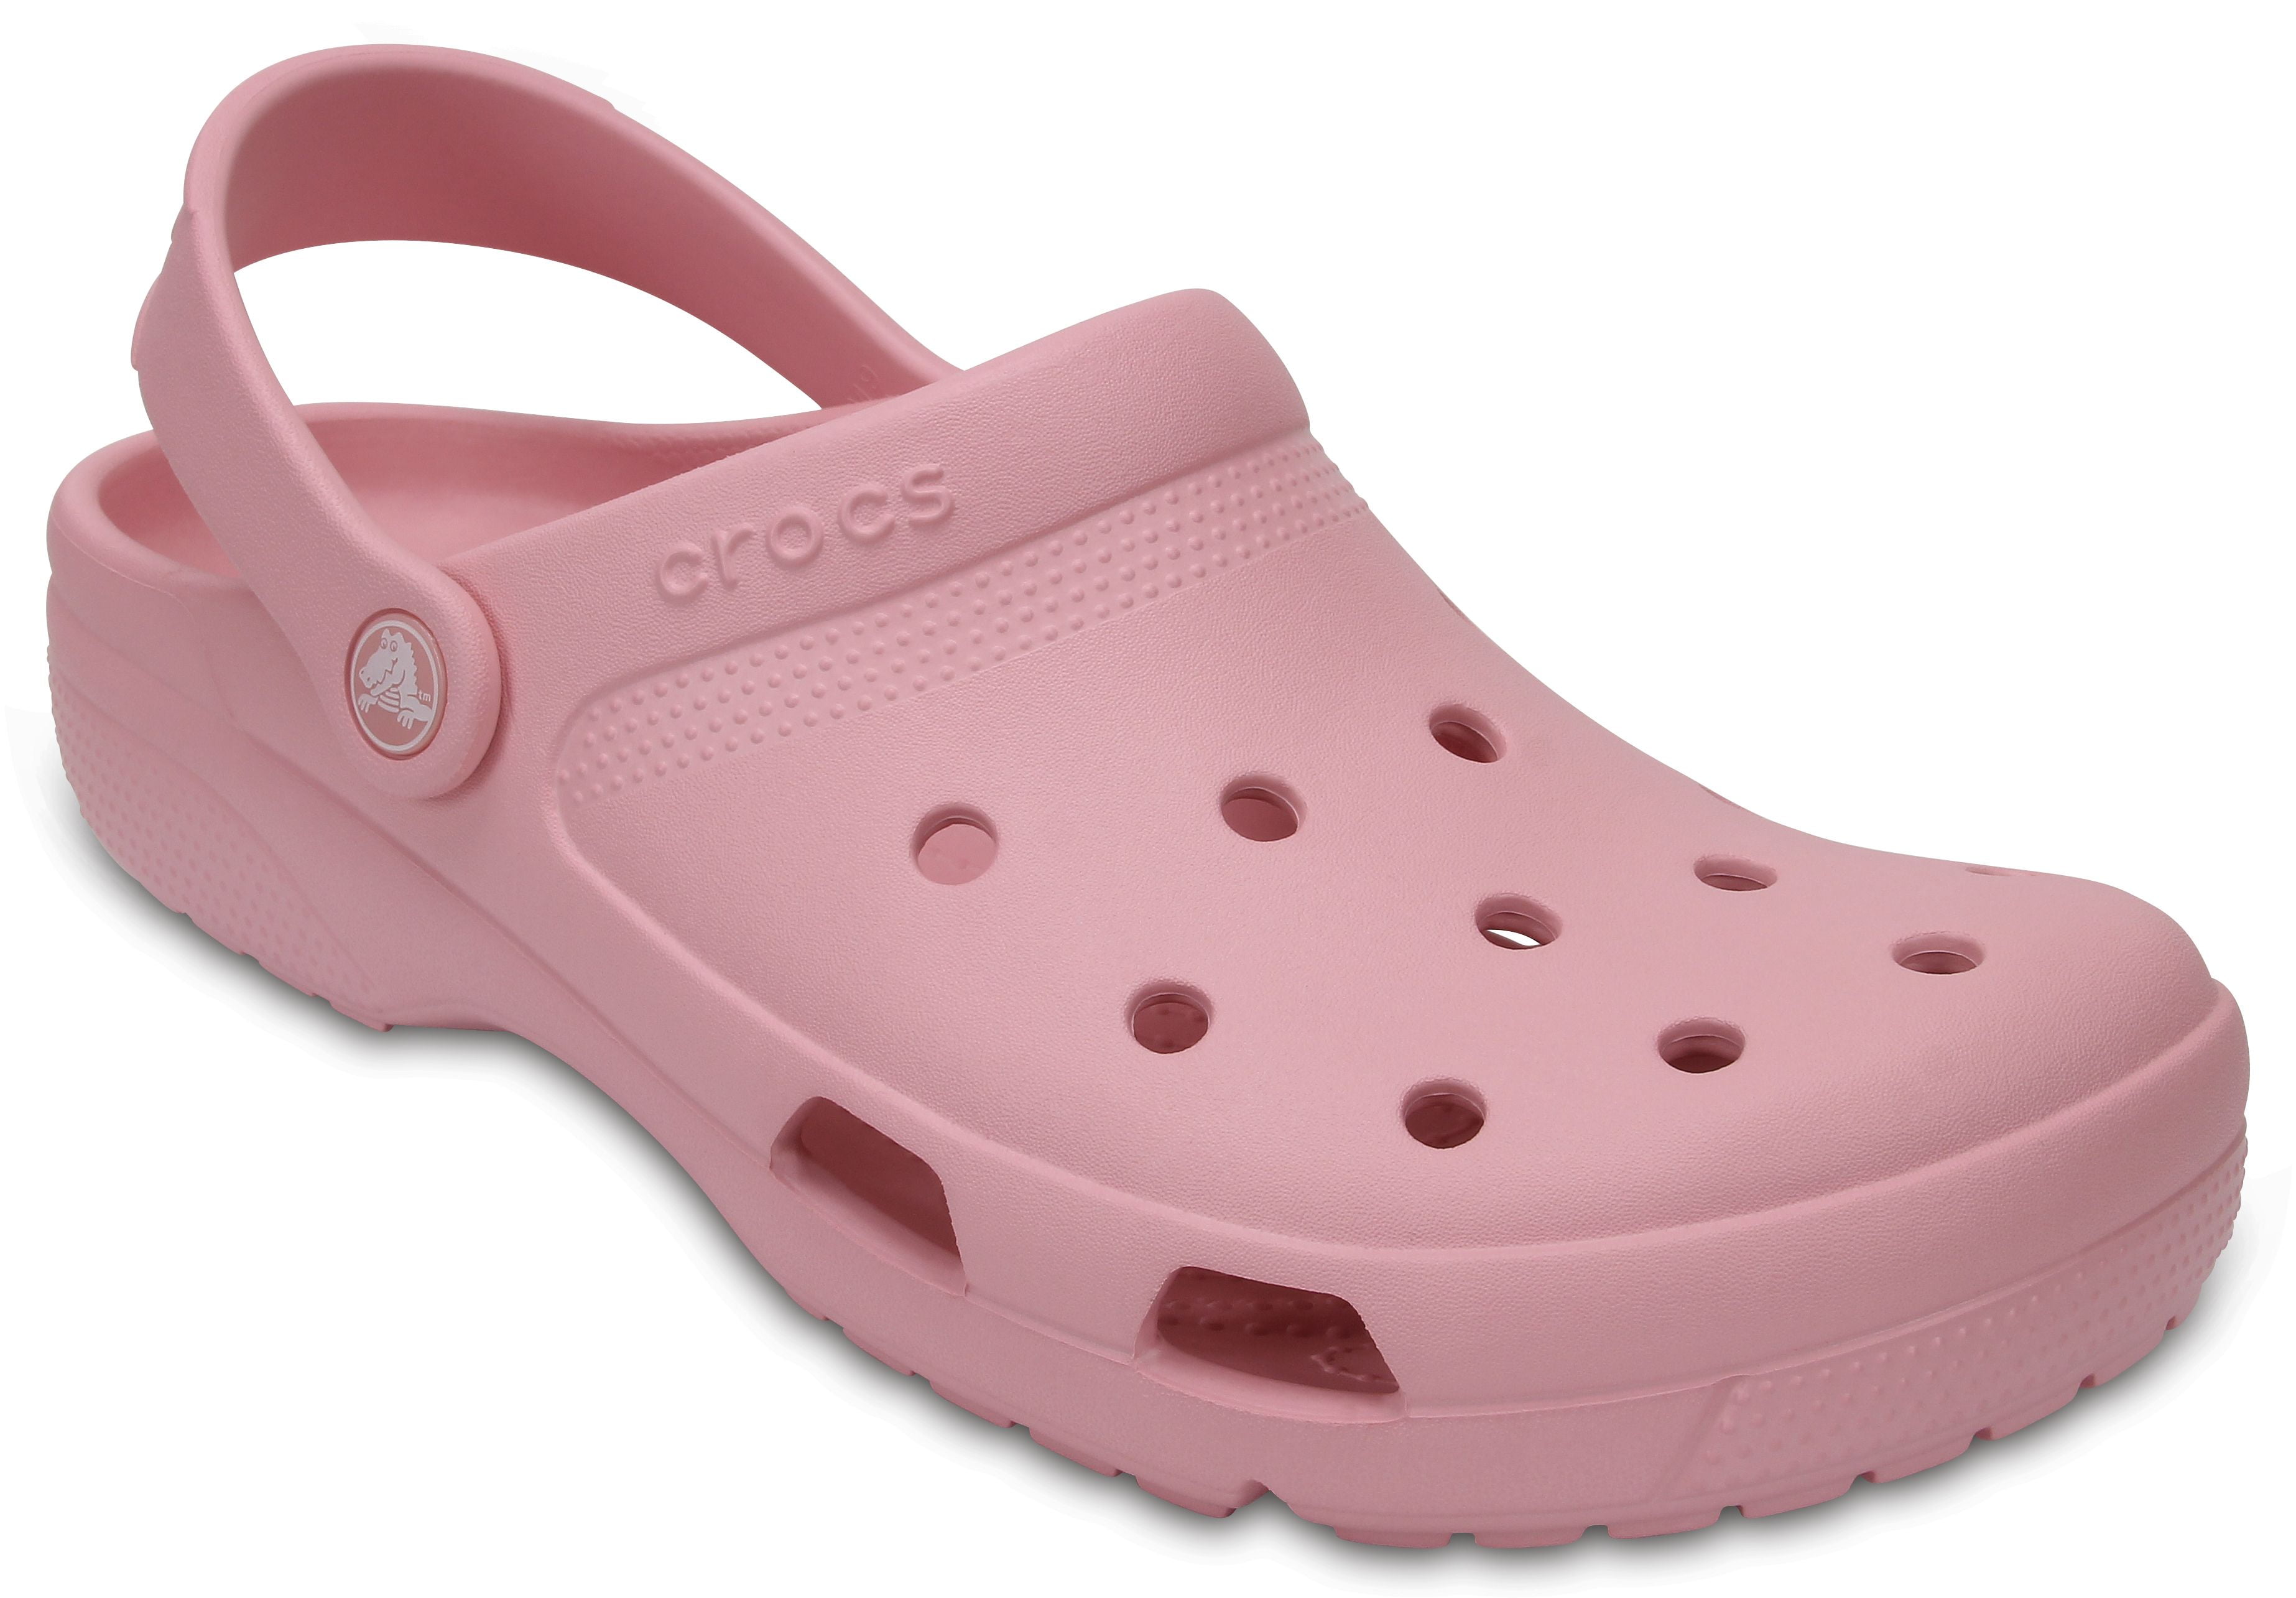 walmart crocs clogs